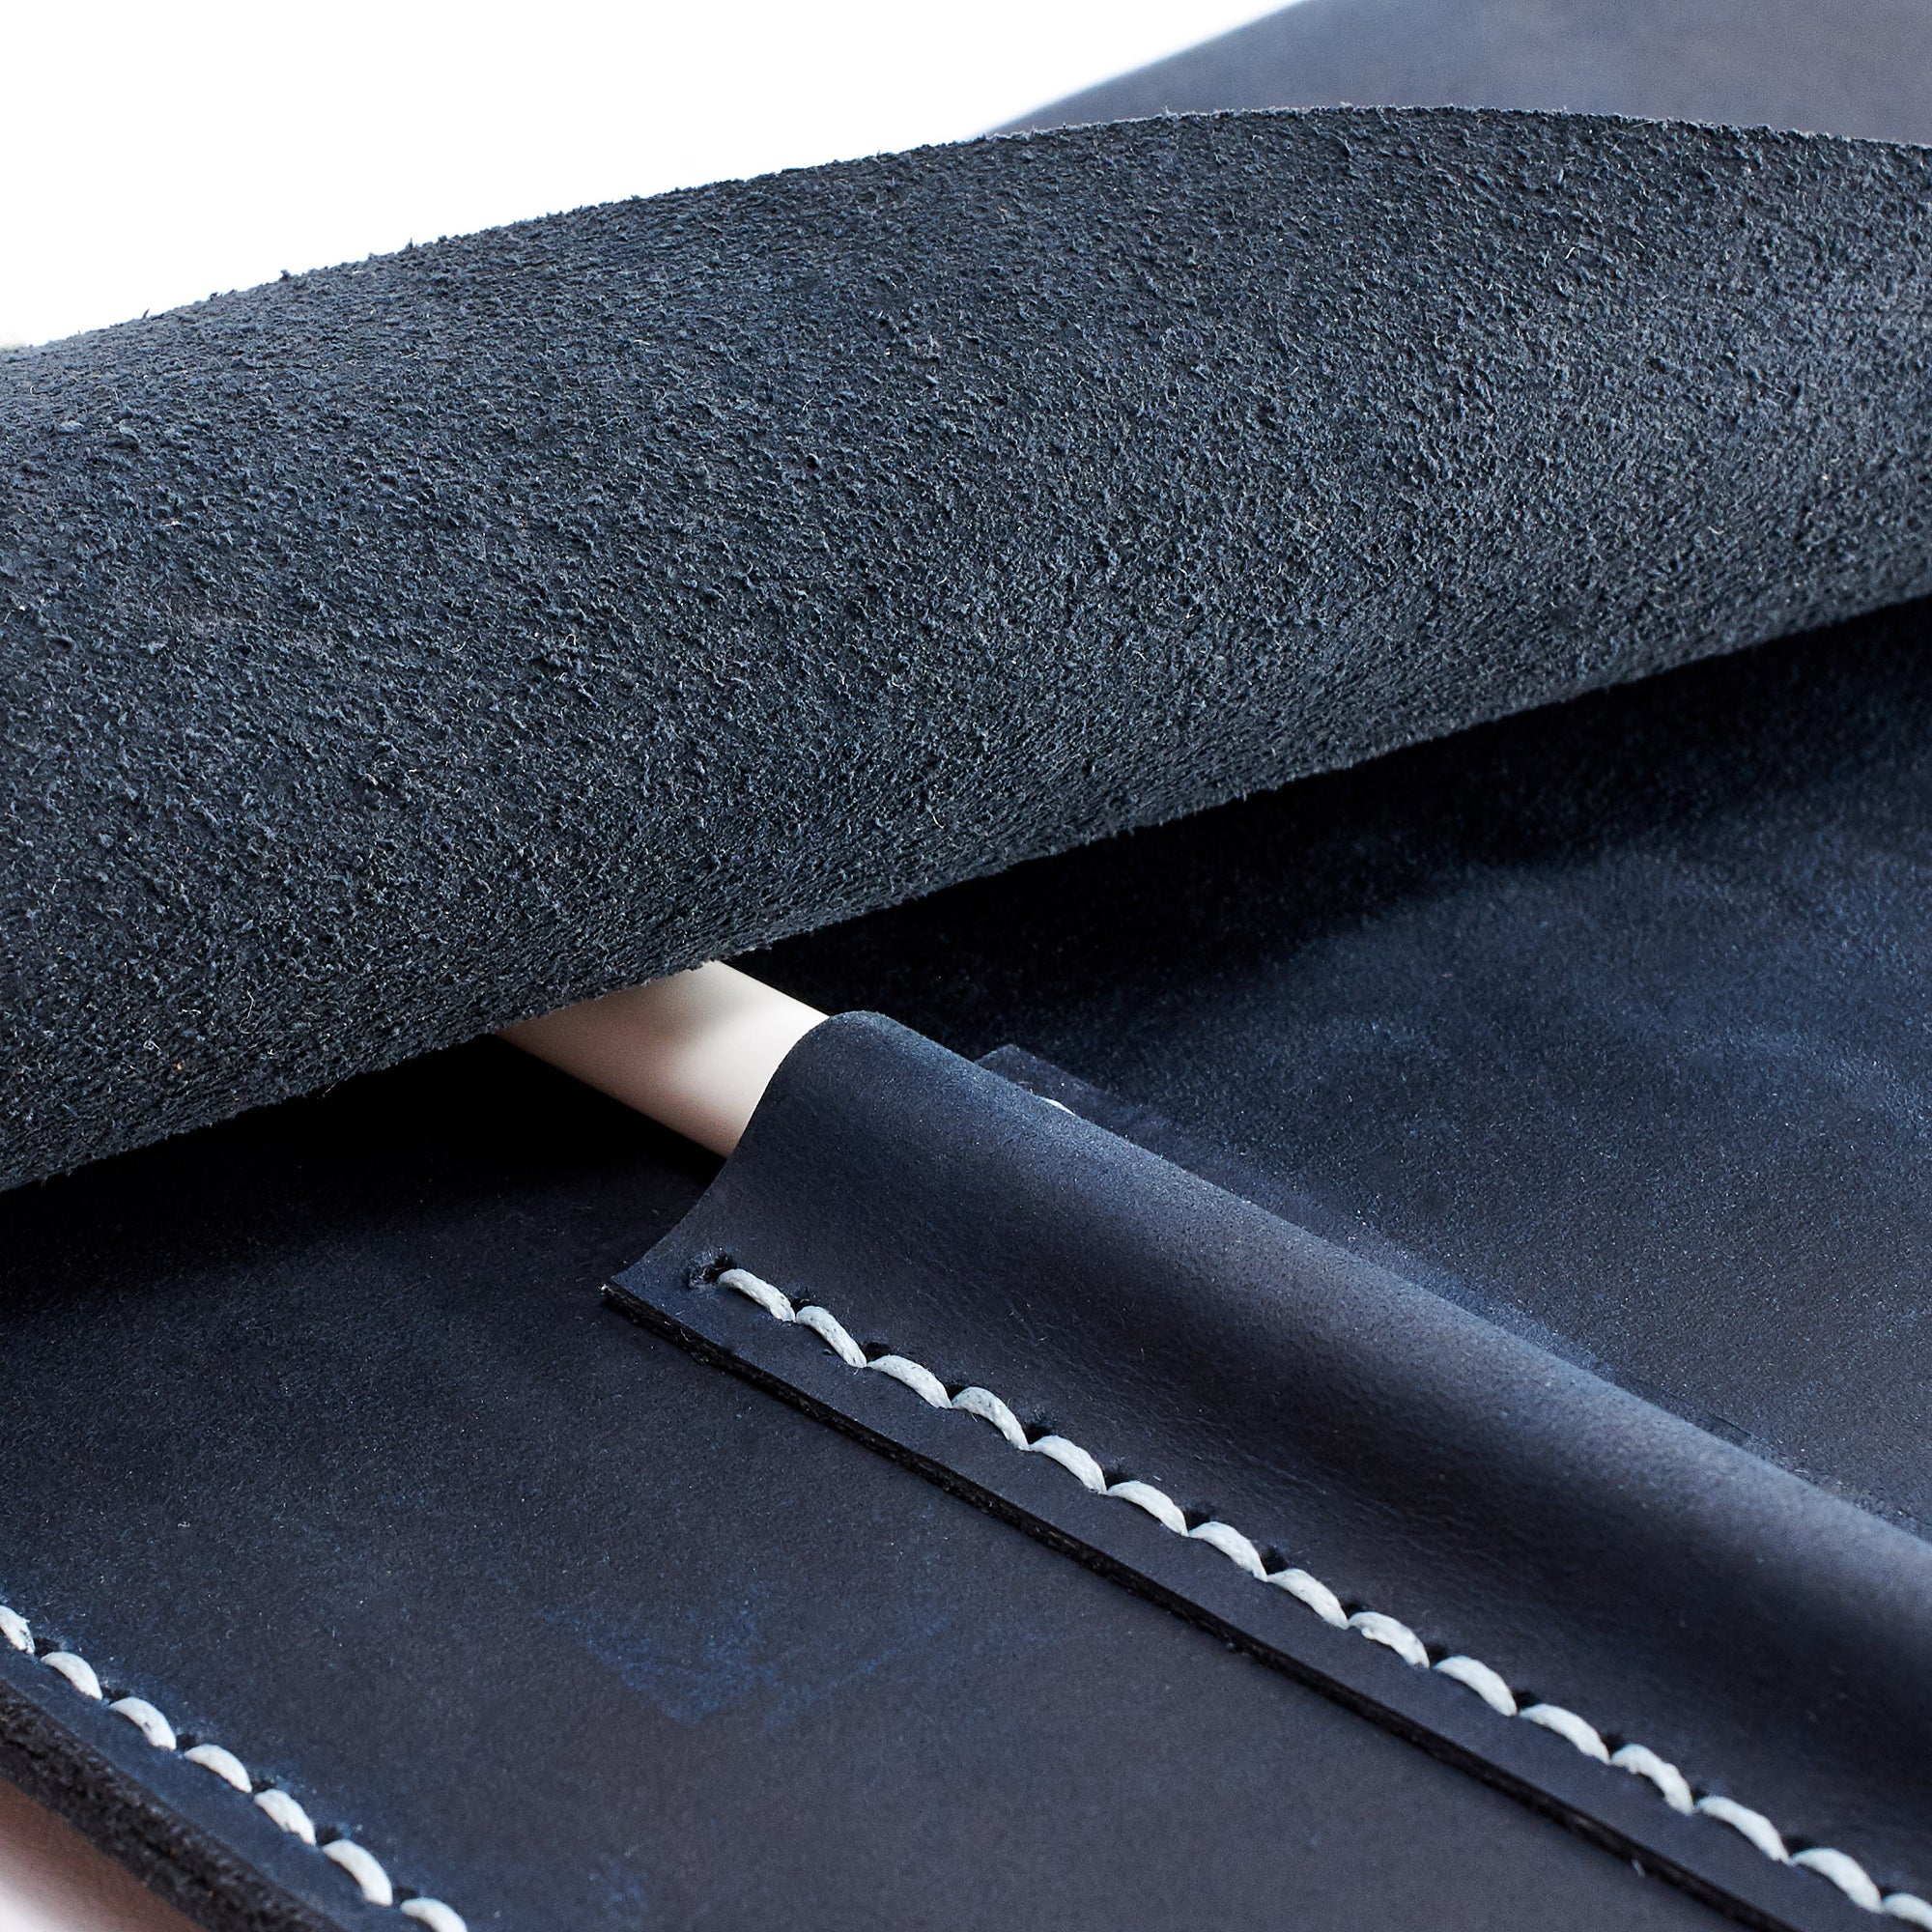 Marker pocket. Blue handcrafted leather reMarkable tablet case. Folio with Marker holder